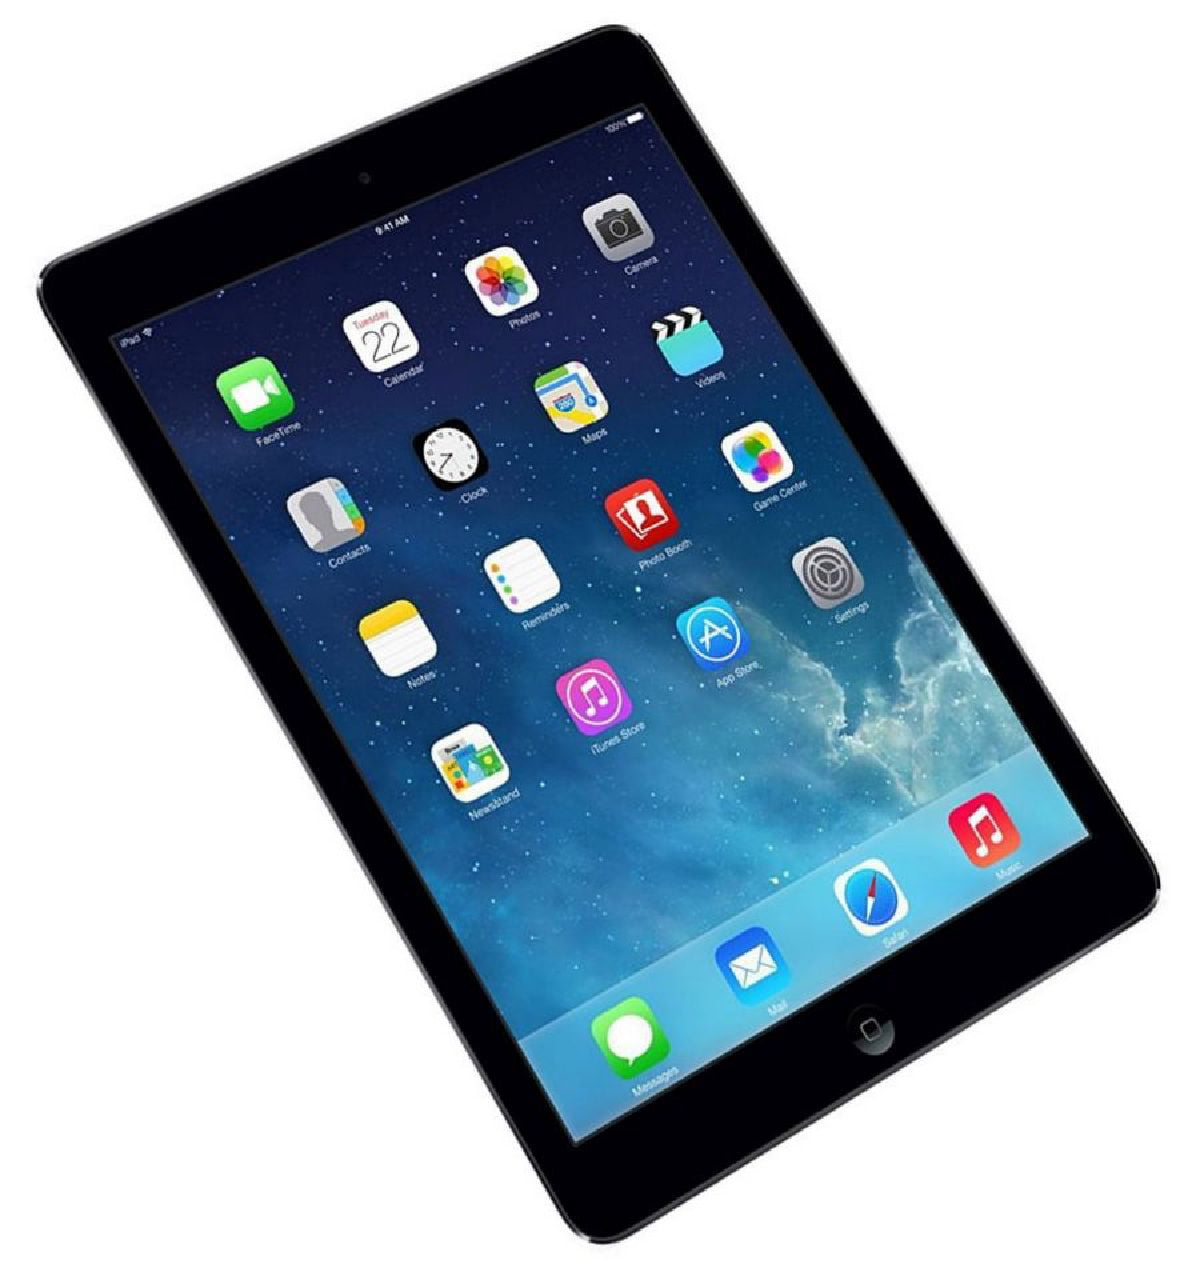 【图】苹果iPad Mini 2(64G/Wifi版)图片( Apple iPad Mini Retina(64G/Wifi版) 图片 ...